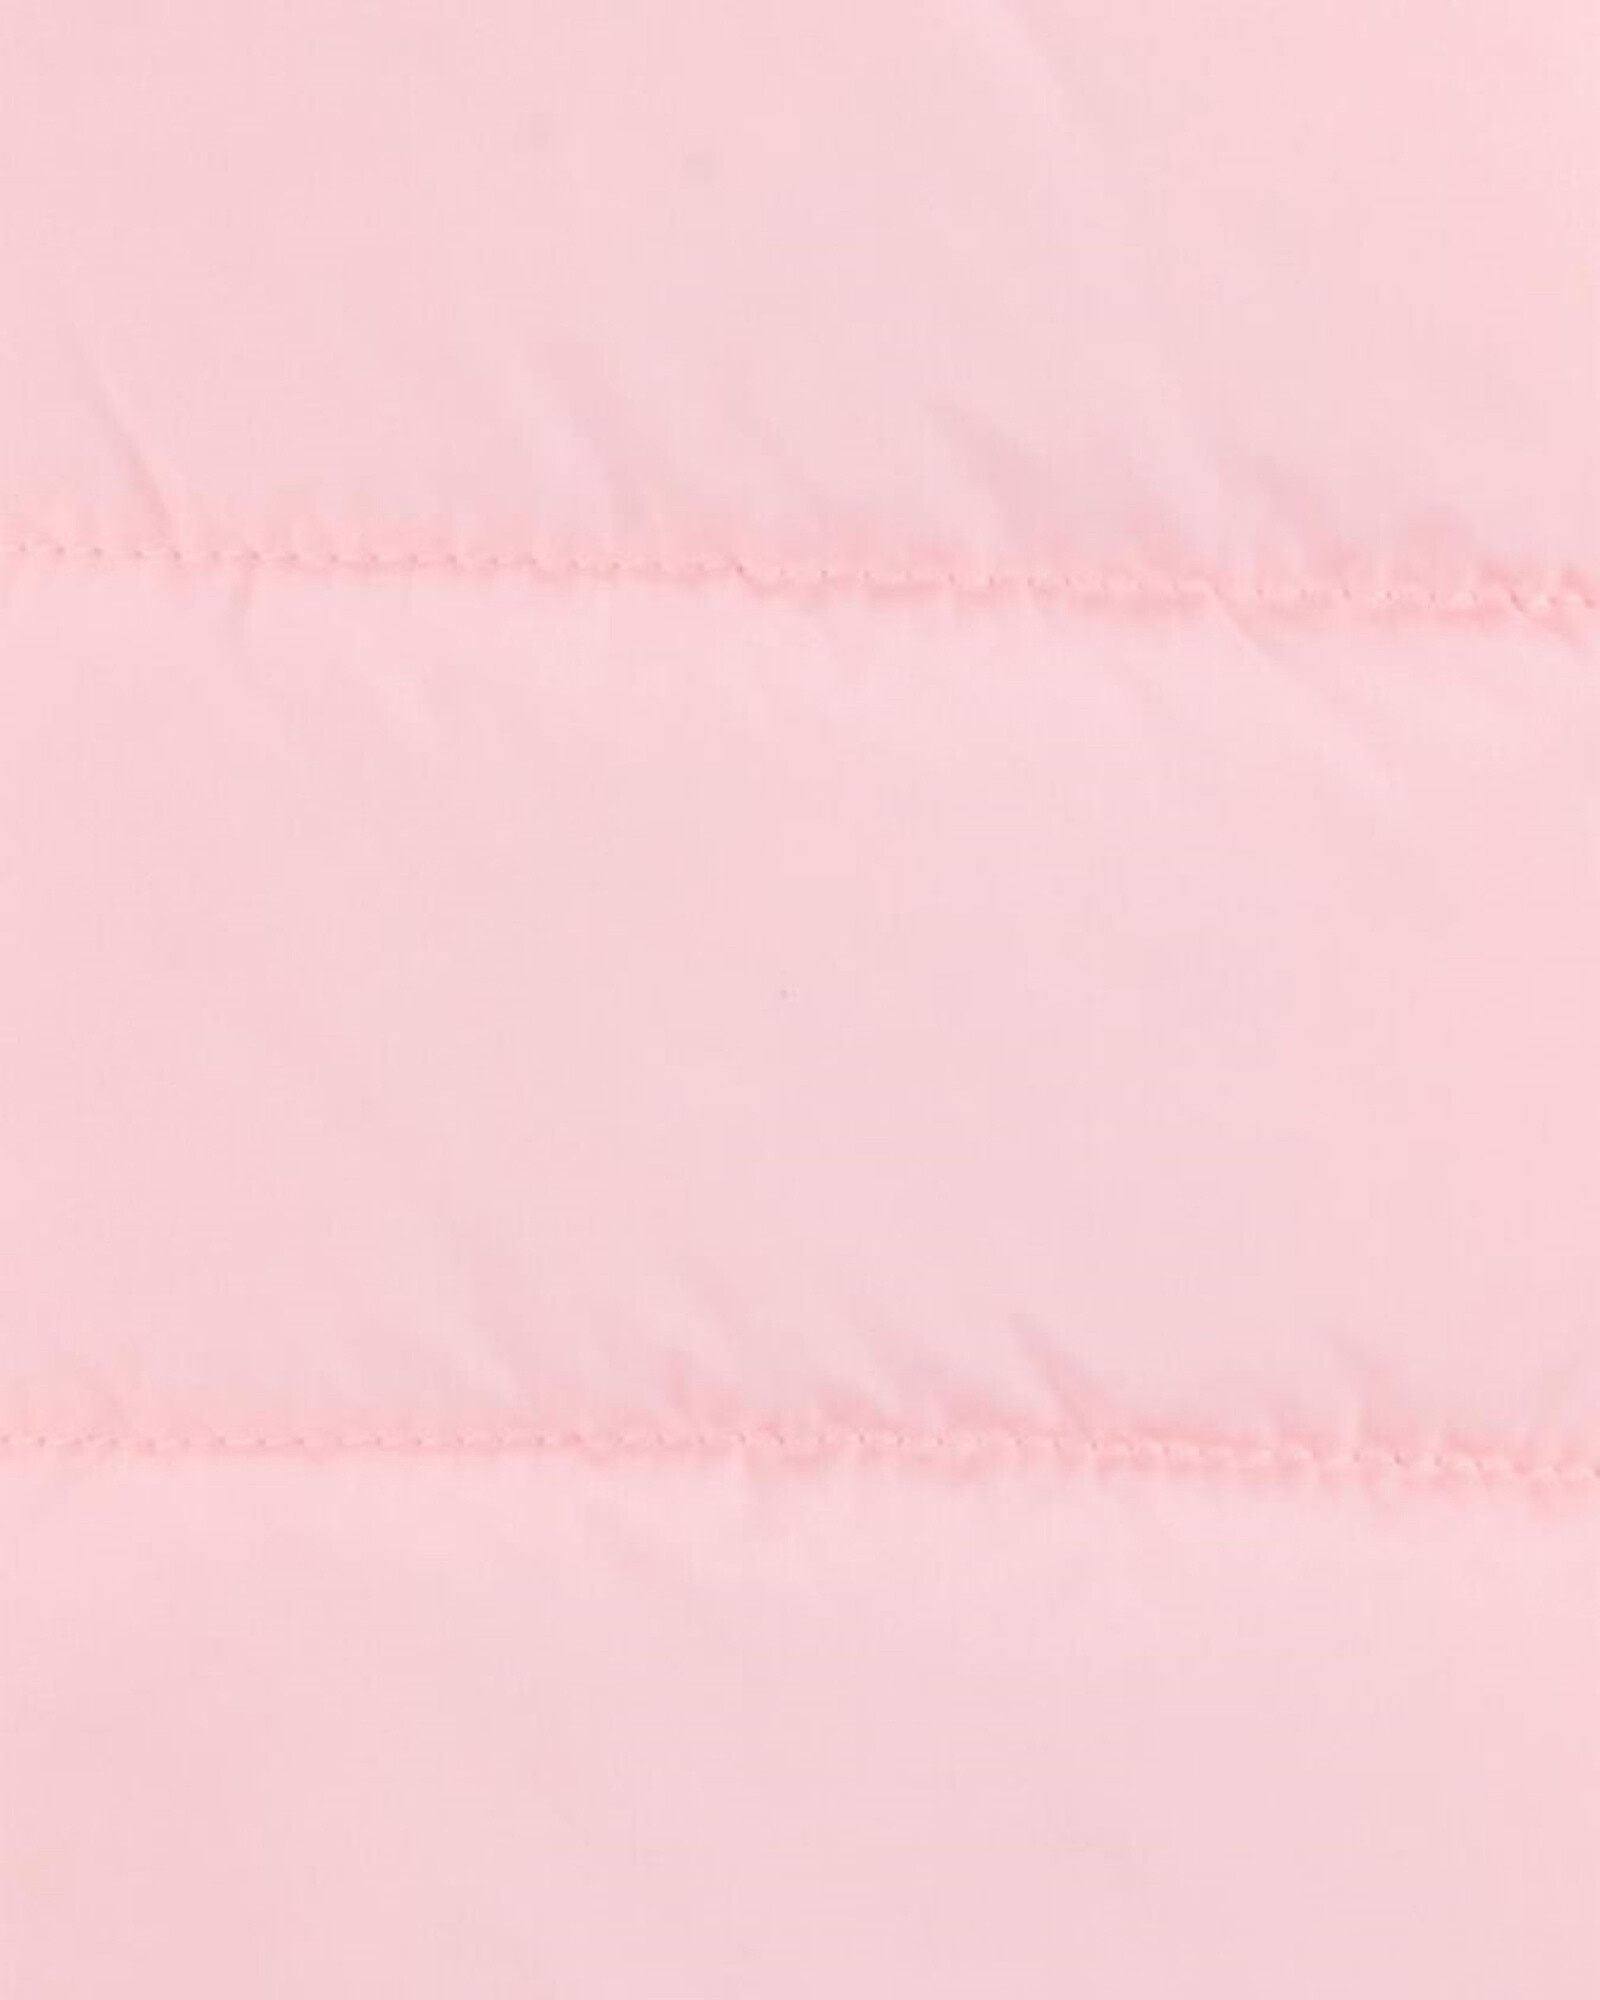 Campera plegable rosada. Talles 4T-6 Sin color